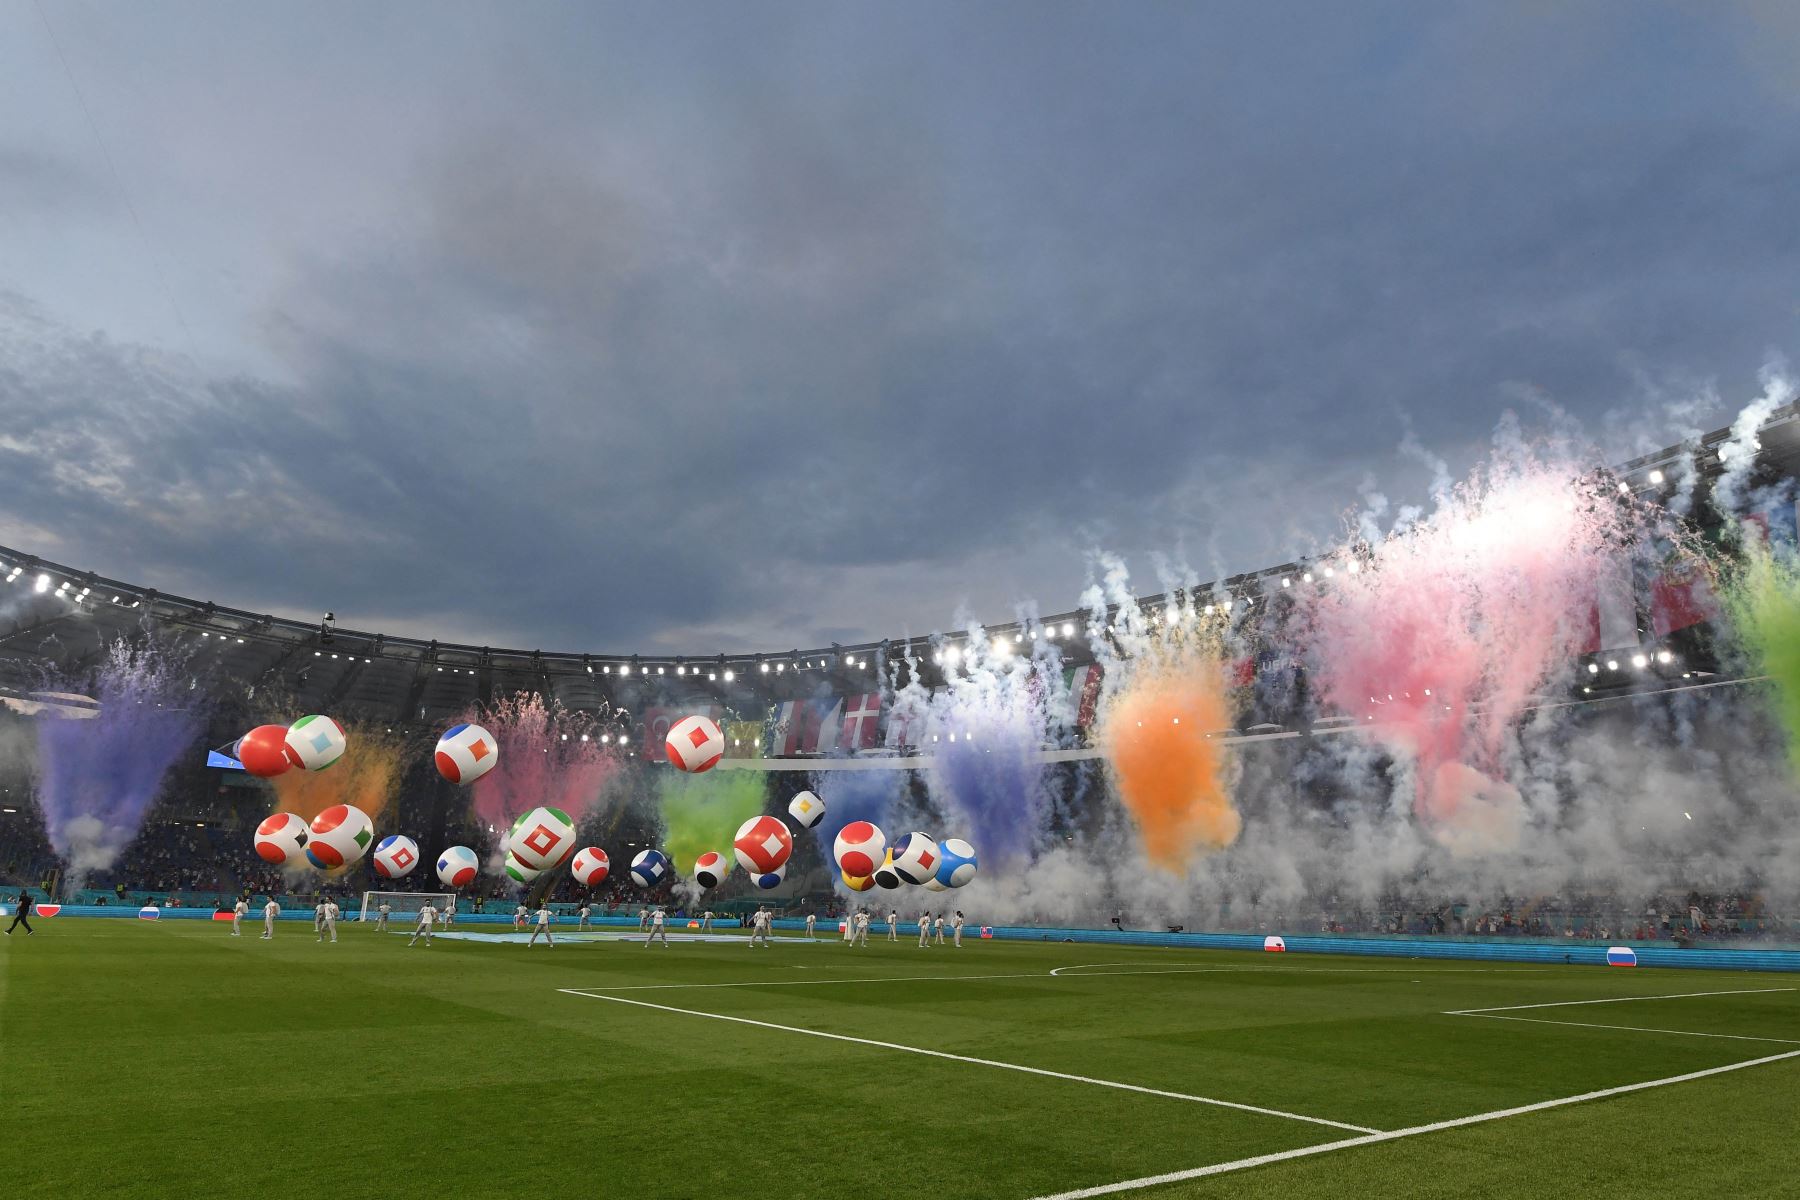 Ceremonia de apertura del Campeonato Europeo de Fútbol de la UEFA Euro 2020 2021, antes del inicio de la competencia Turquía vs Italia. Foto: AFP